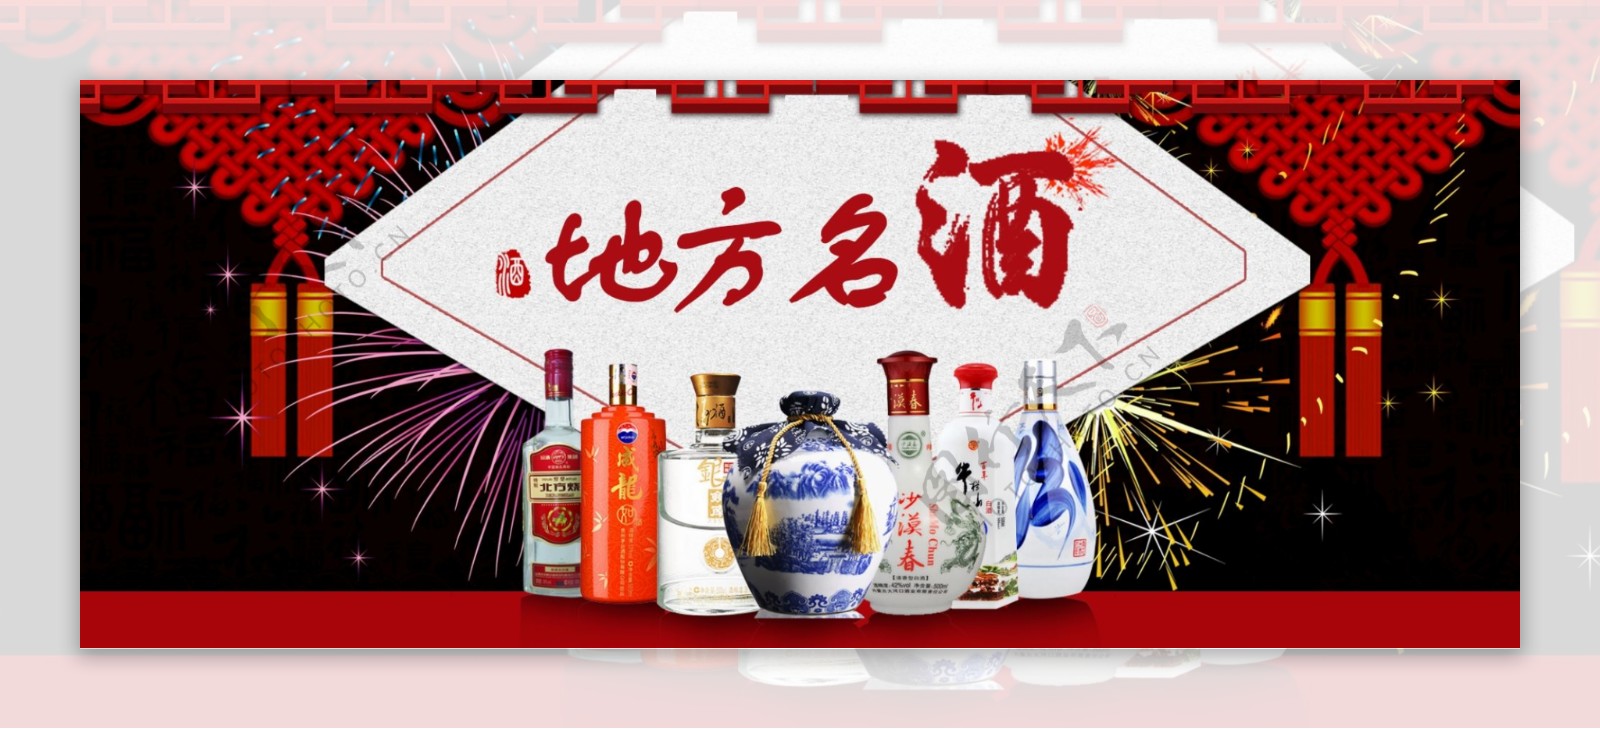 地方特色酒中国风促销banner